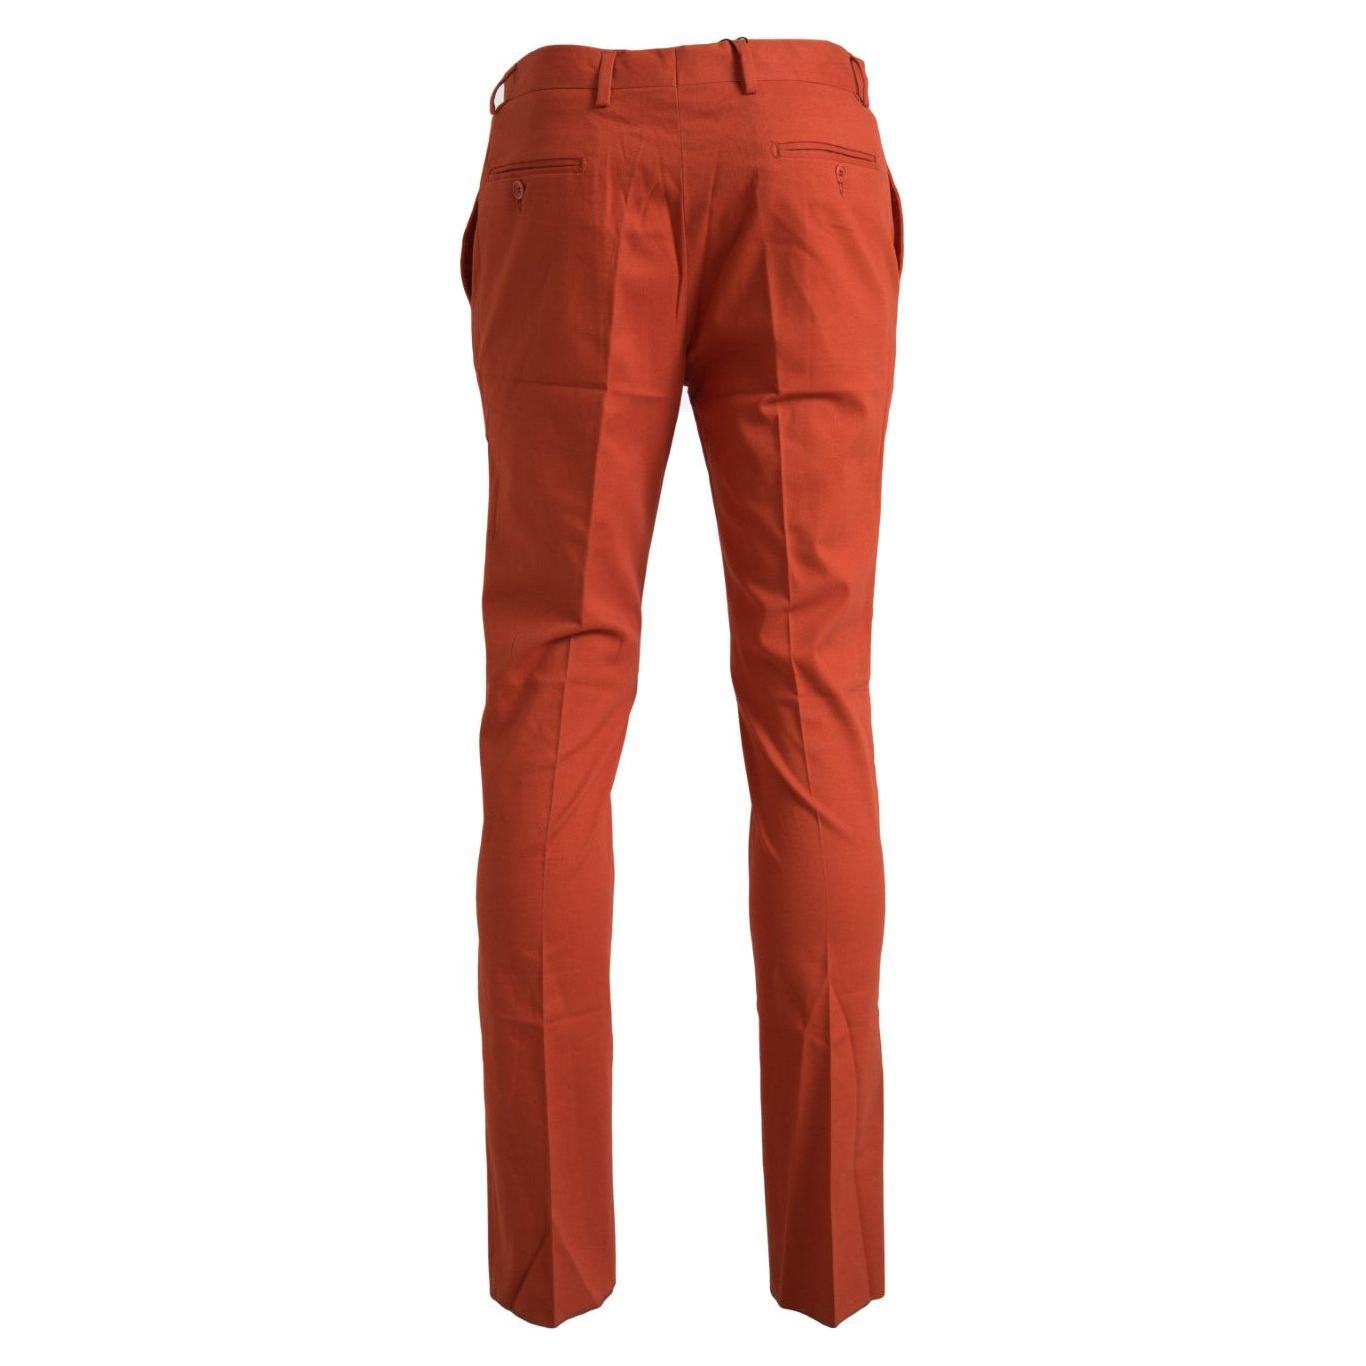 BENCIVENGA Elegant Orange Pure Cotton Pants orange-straight-fit-men-formal-trousers-pants 465A4261-Medium-1d7e06a7-e18.jpg